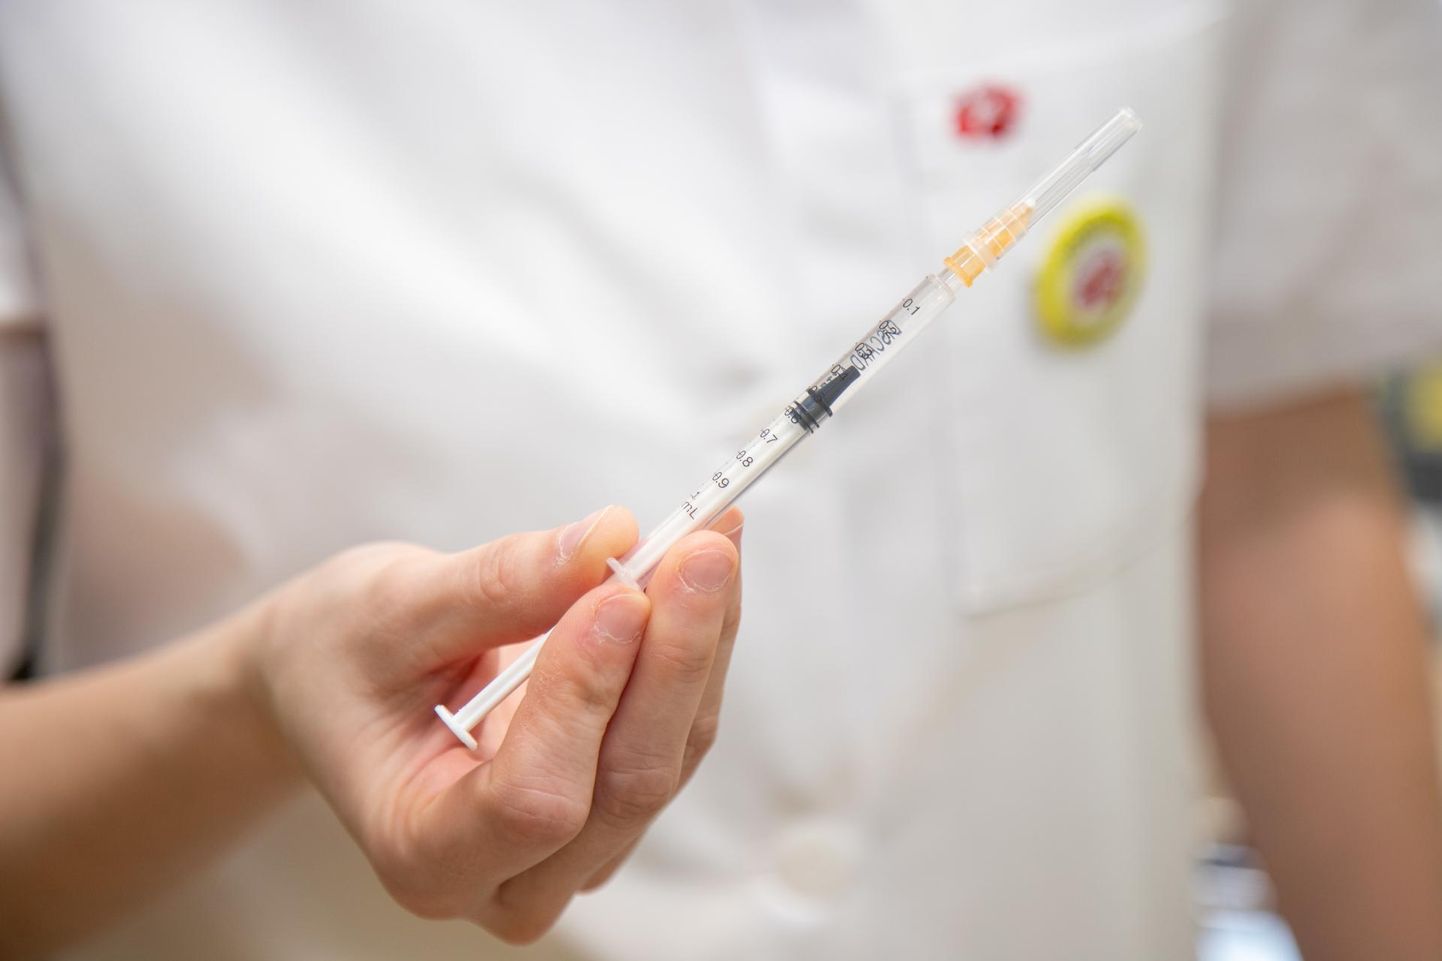 Terviseameti pressiteate kohaselt on uutest nakatunutest kolmveerand vaktsineerimata. 